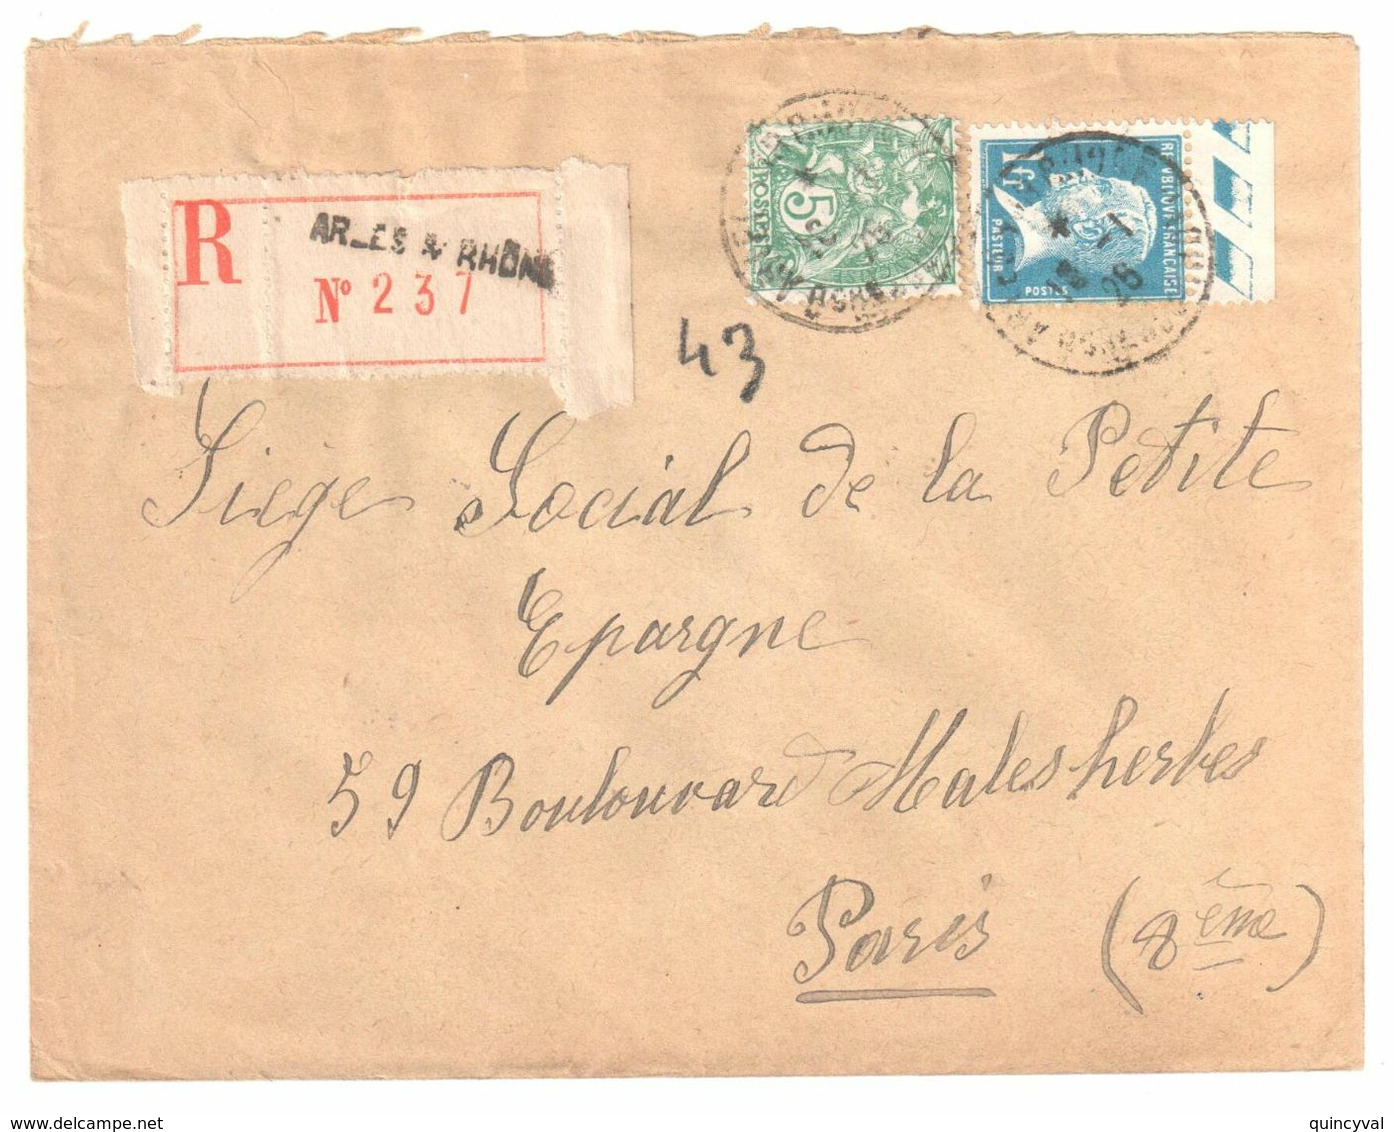 ARLES S RHONE Lettre Recommandée 1 F Pasteur Bord De Feuille 5c Blanc Yv 111 179 Ob 18 1 1926 - Brieven En Documenten